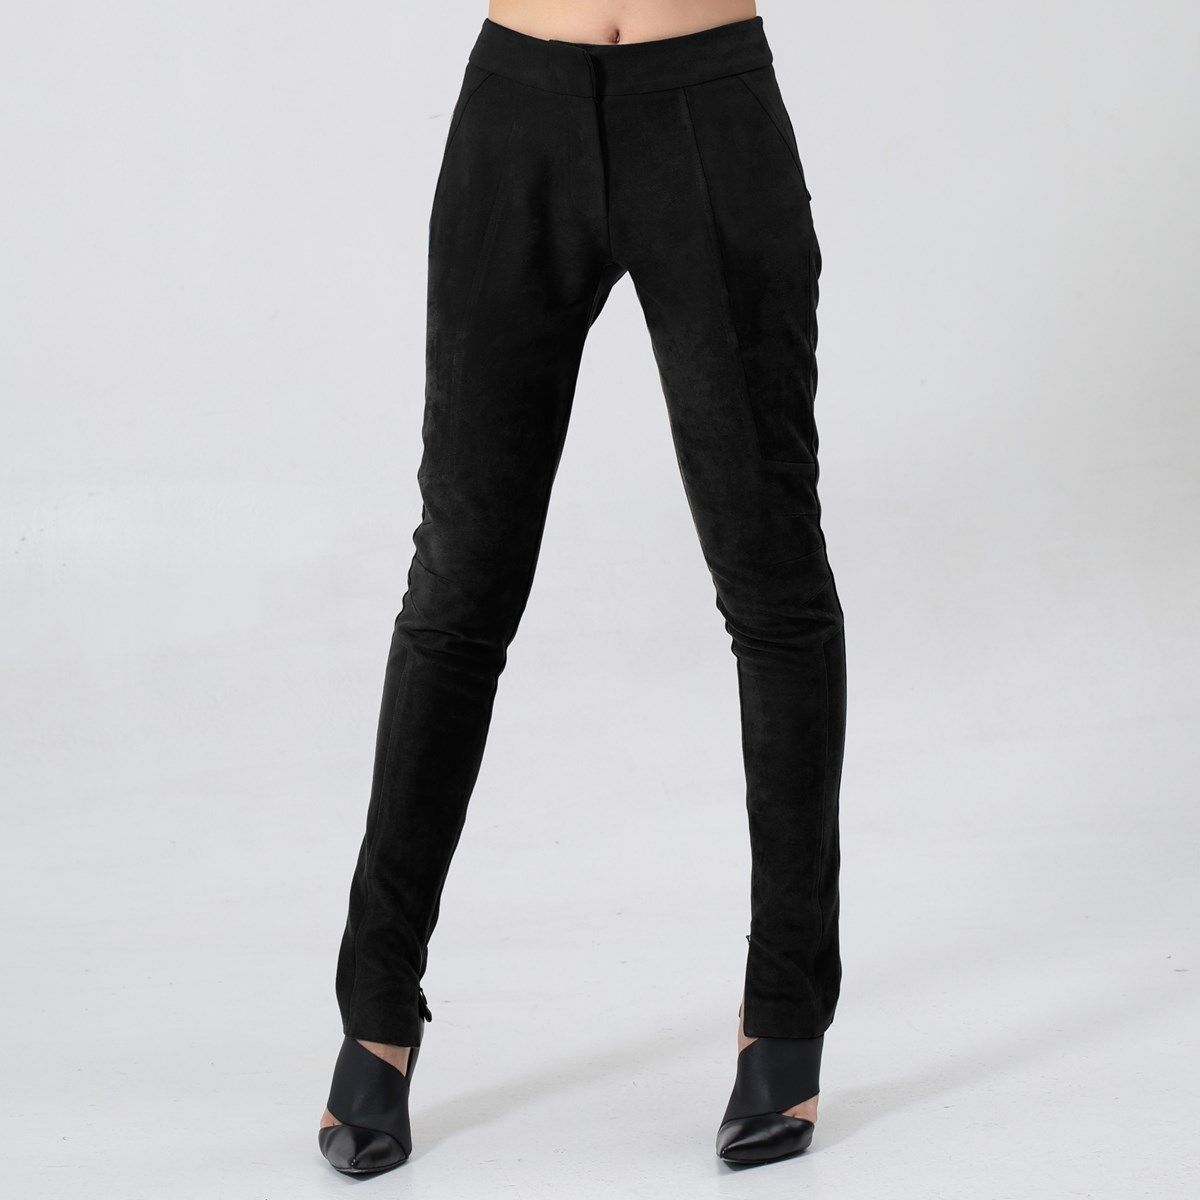 Bottes femme noires Pantalon Stretch Pantalon Large Plus Oversize Travail Bureau Smart Taille